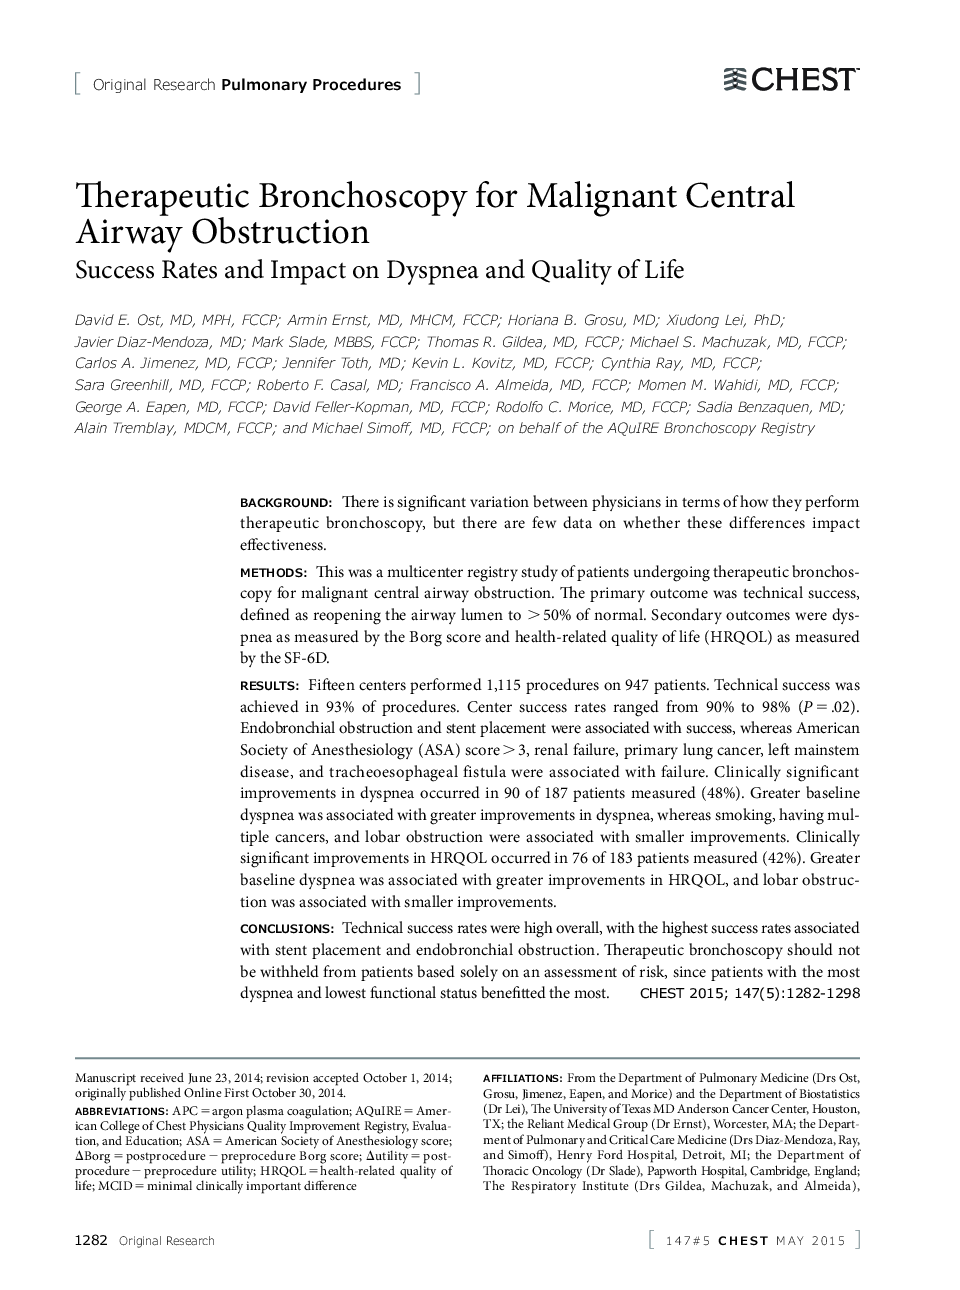 تحقیقات اصلی: روش های رونویسی برونکوسکوپی درمانگر برای انسداد مجاری هوایی مجاری بدخیم 